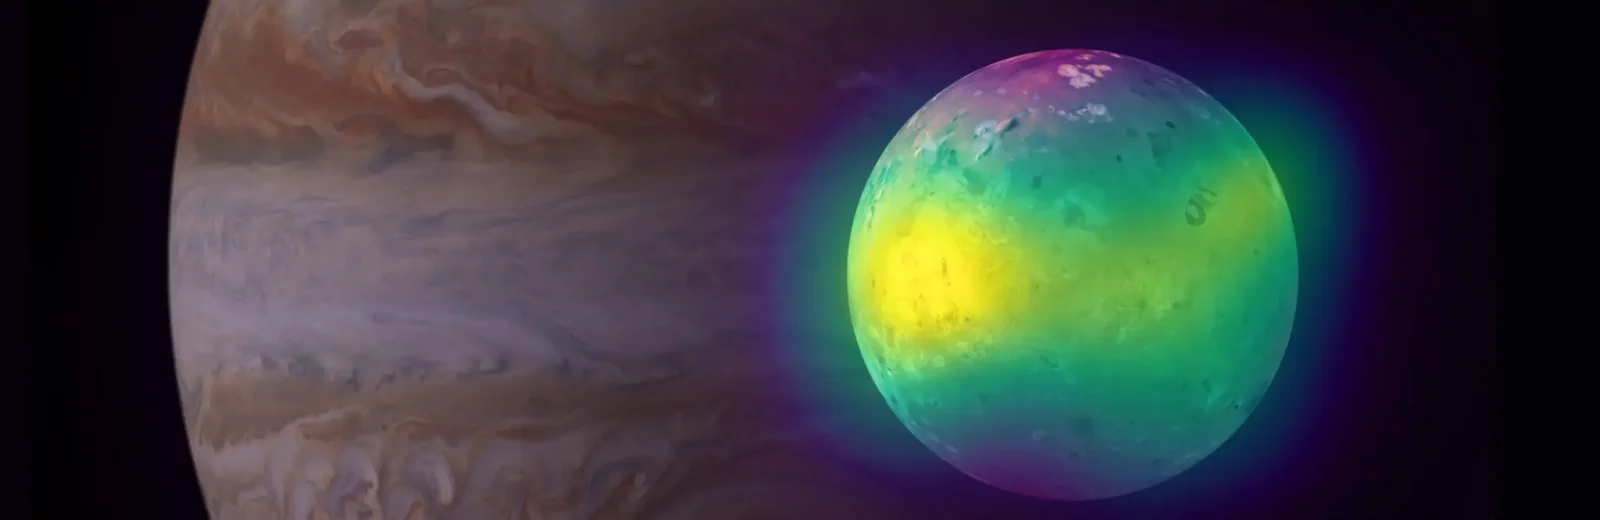 Los volcanes producen casi la mitad de la atmósfera de la luna Io de Júpiter